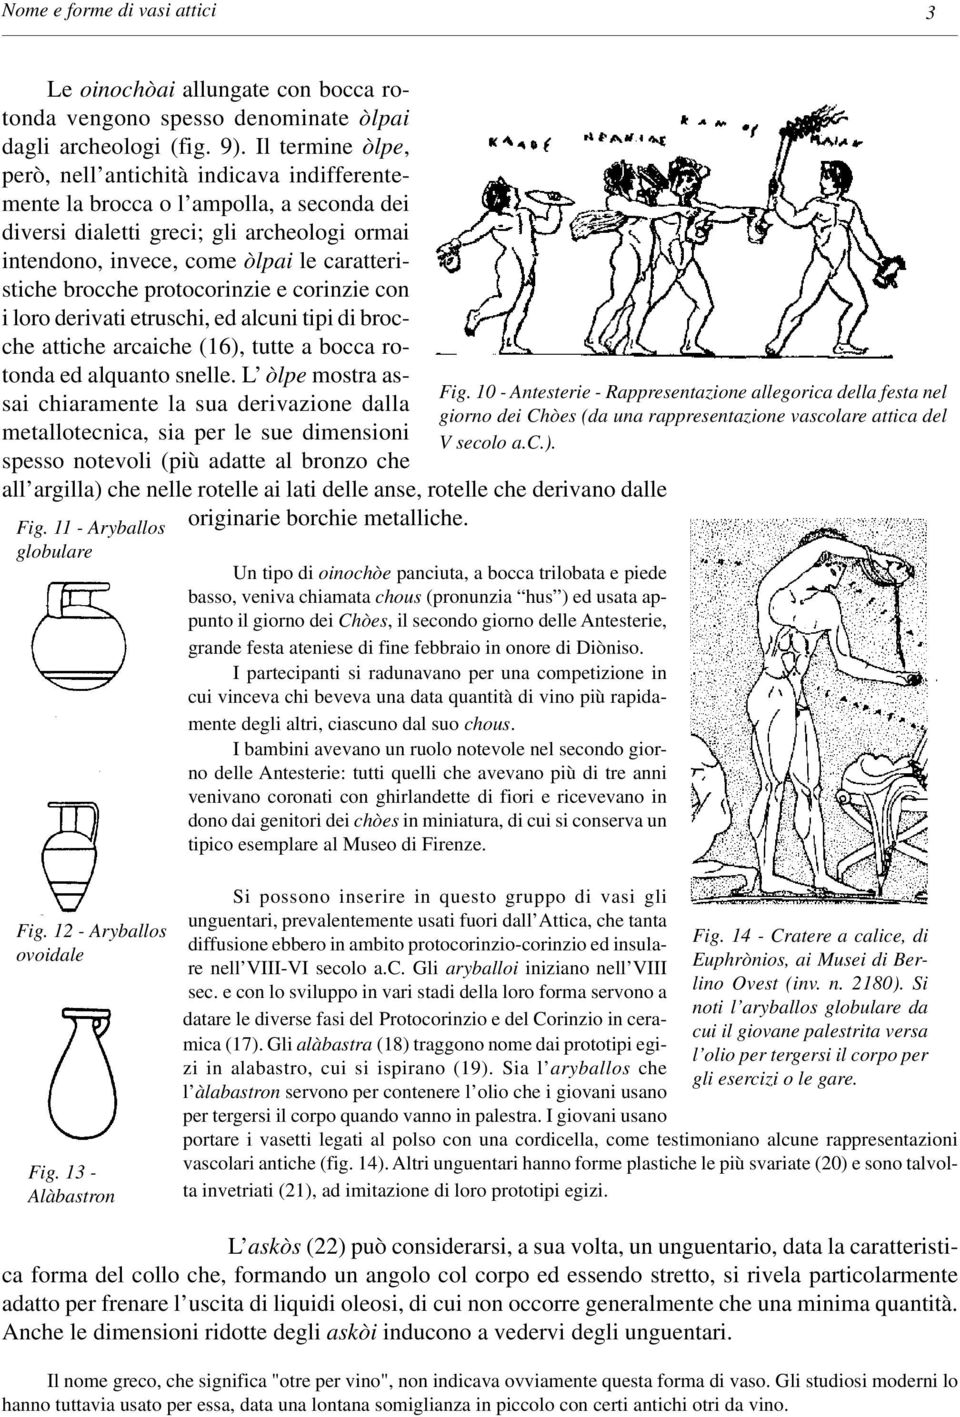 brocche protocorinzie e corinzie con i loro derivati etruschi, ed alcuni tipi di brocche attiche arcaiche (16), tutte a bocca rotonda ed alquanto snelle.